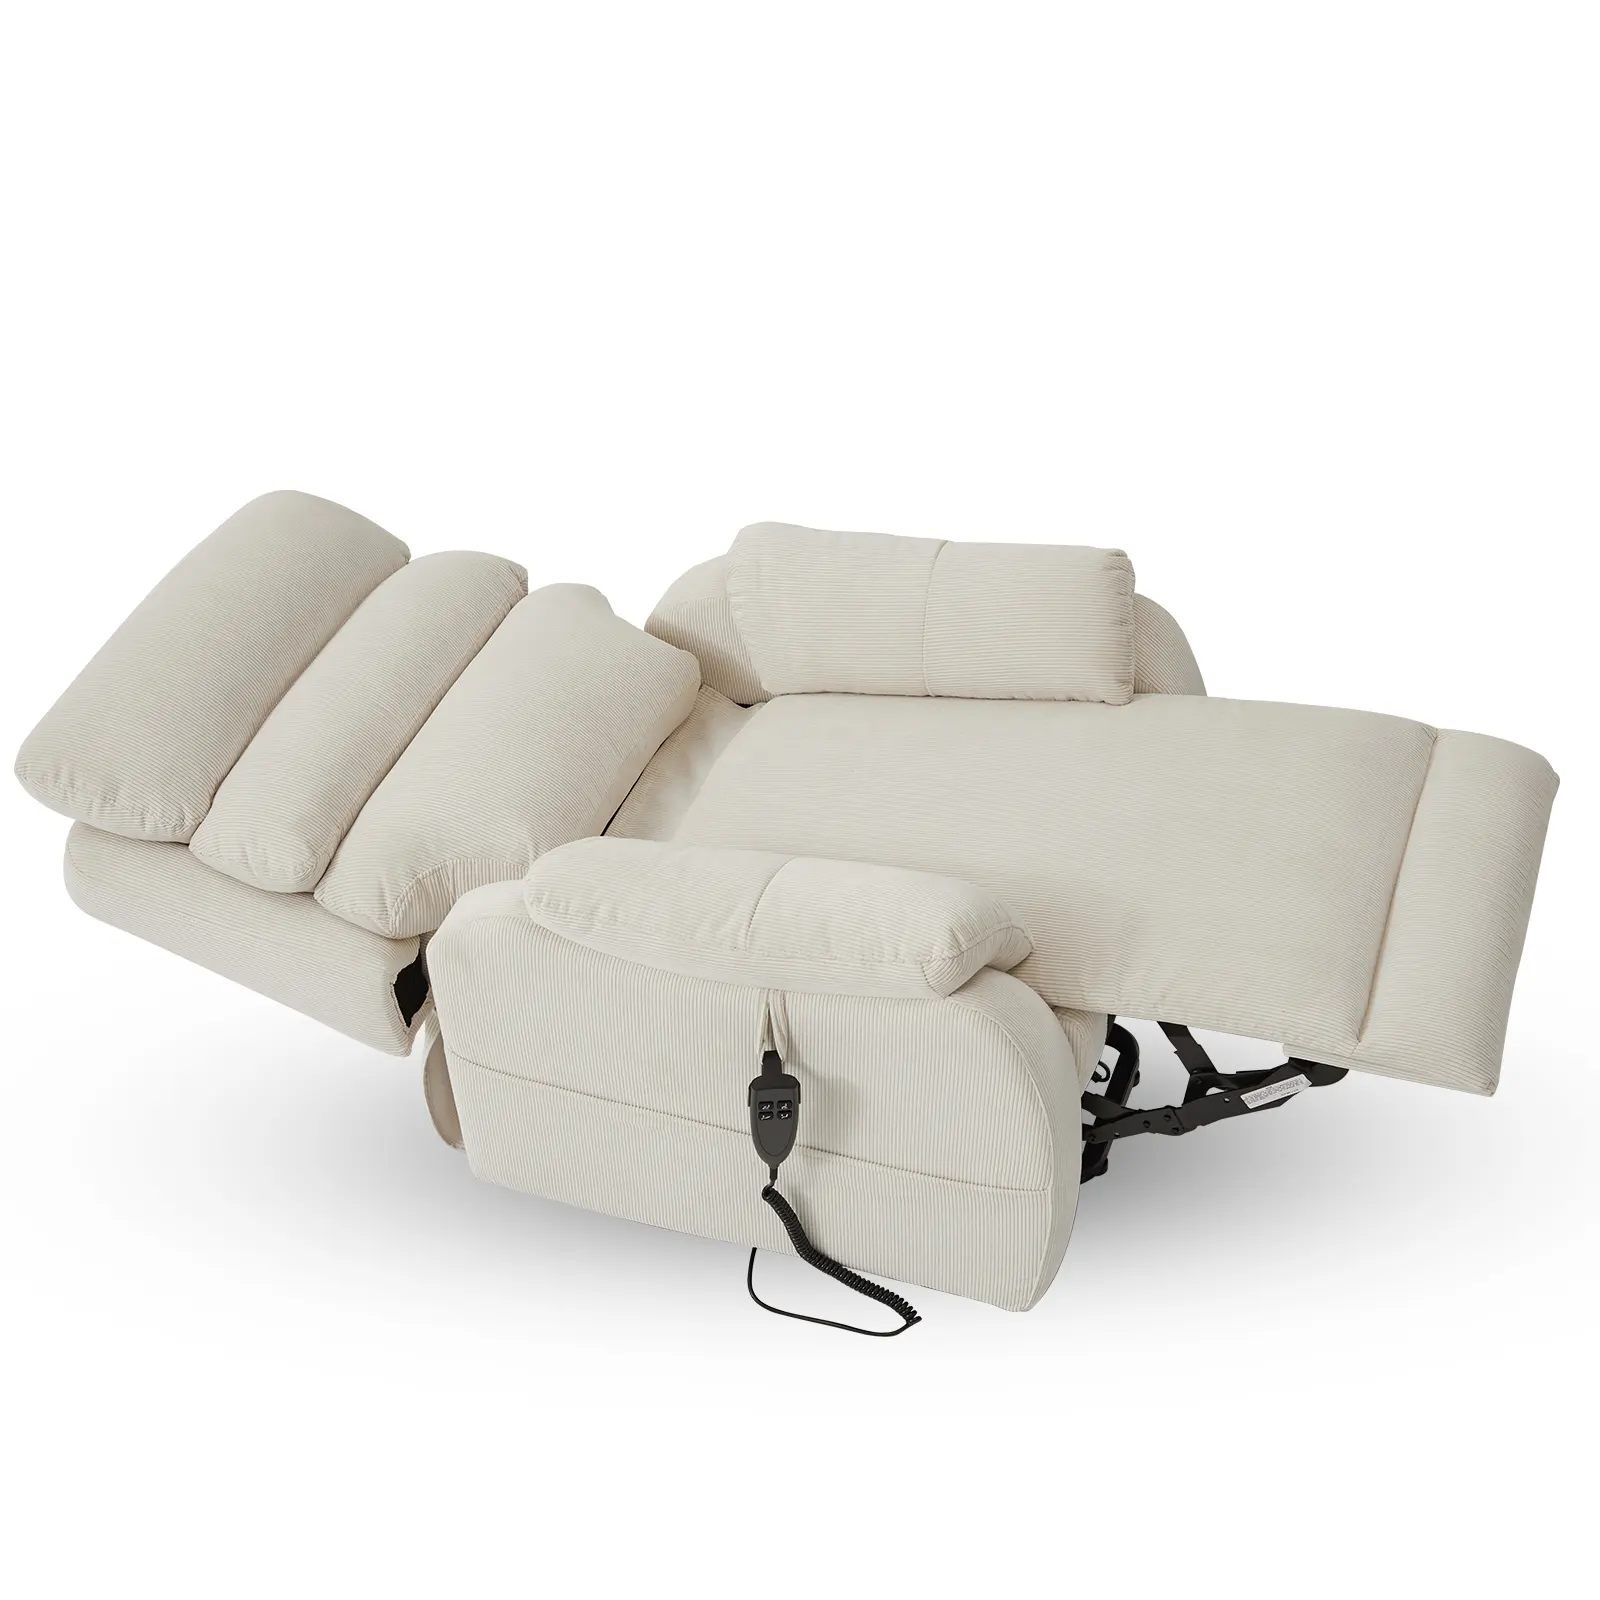 CJSmart Heim-Lift-Stuhl Liegestuhl für kurze Personen flaches Liege-Sofa mit unendlicher Positionierungs- und Seitentasche